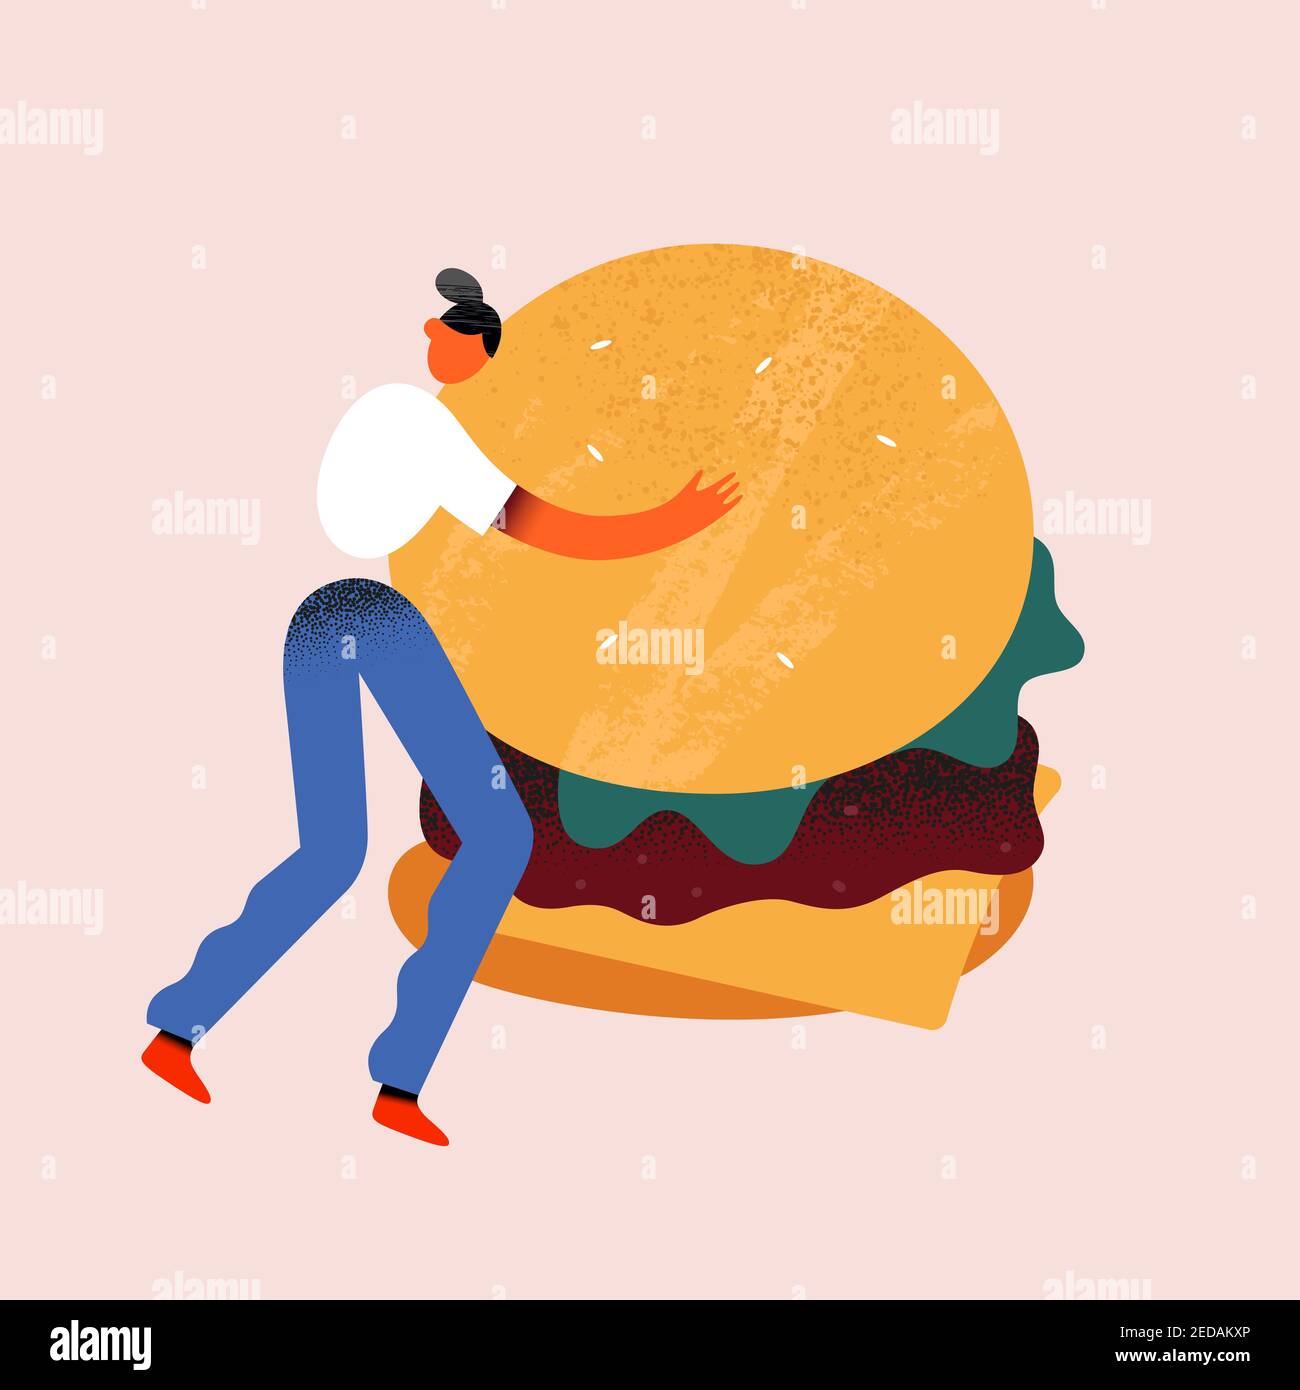 Frau hält Burger, kleine menschliche Charakter hält und umarmt eine riesige Cheeseburger mit Salat und Rindfleisch Patty, Vektor-Cartoon-illutration Stock Vektor